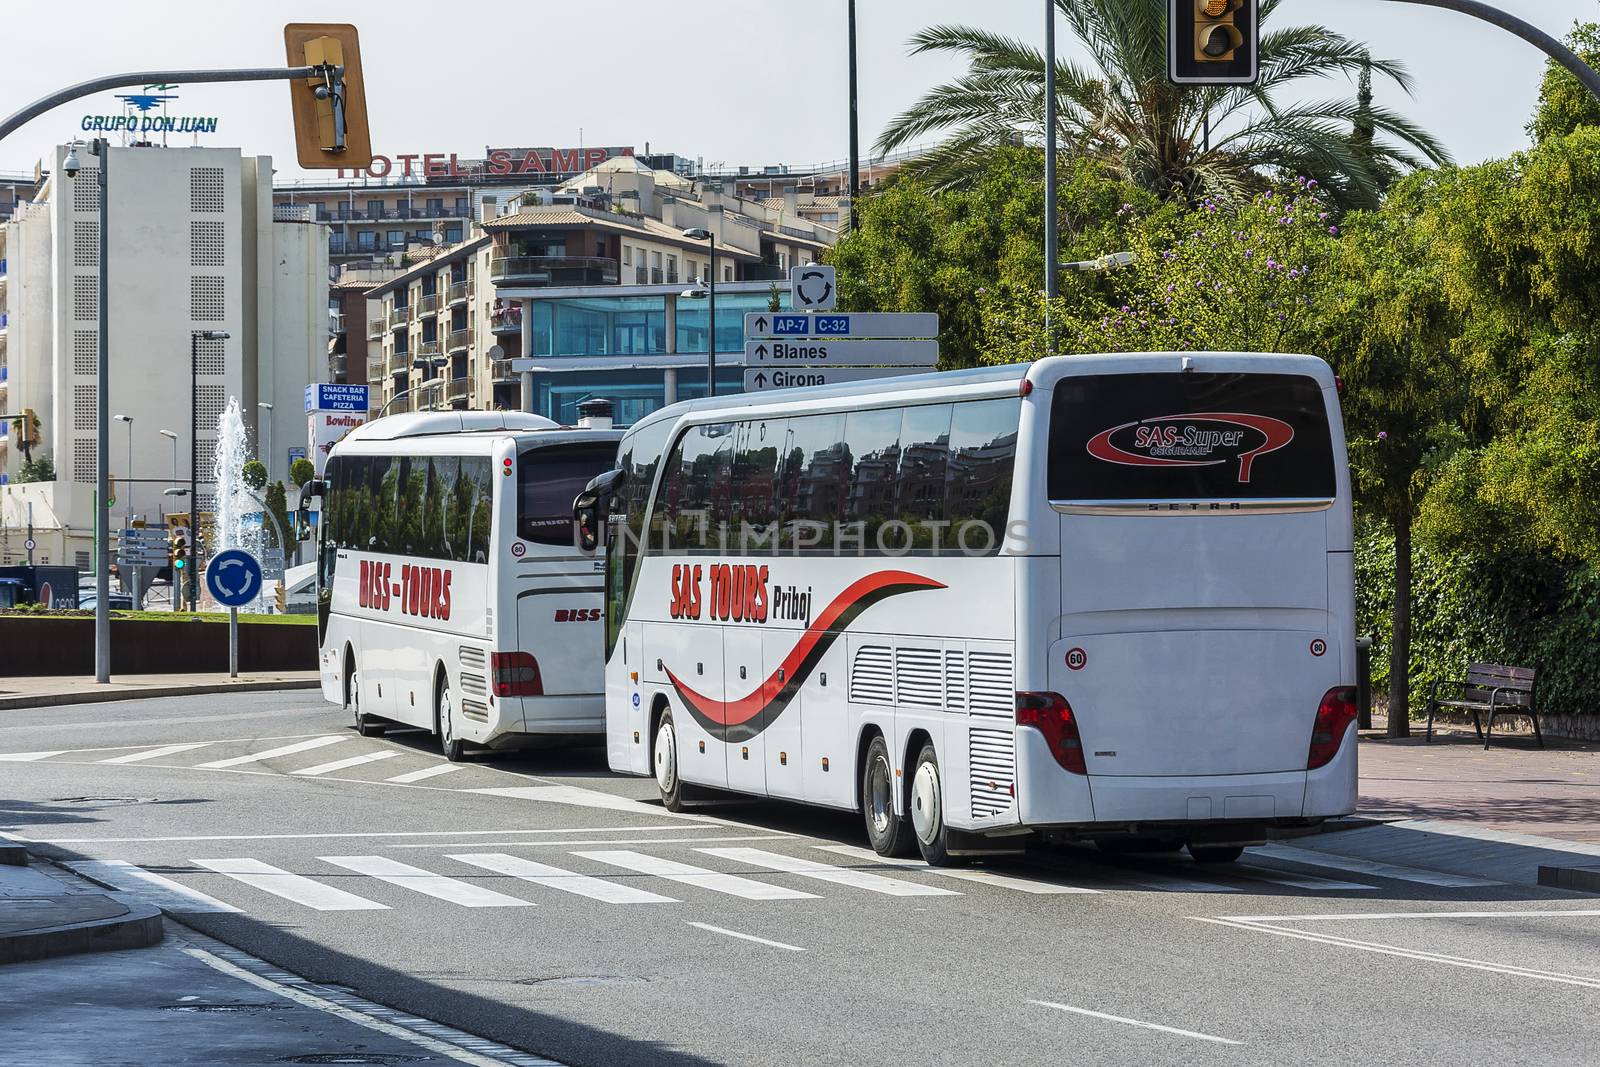 Spain, Lloret de Mar - 22 September 2017: Two bus tour companies BISS TOURS and TOURS SAS